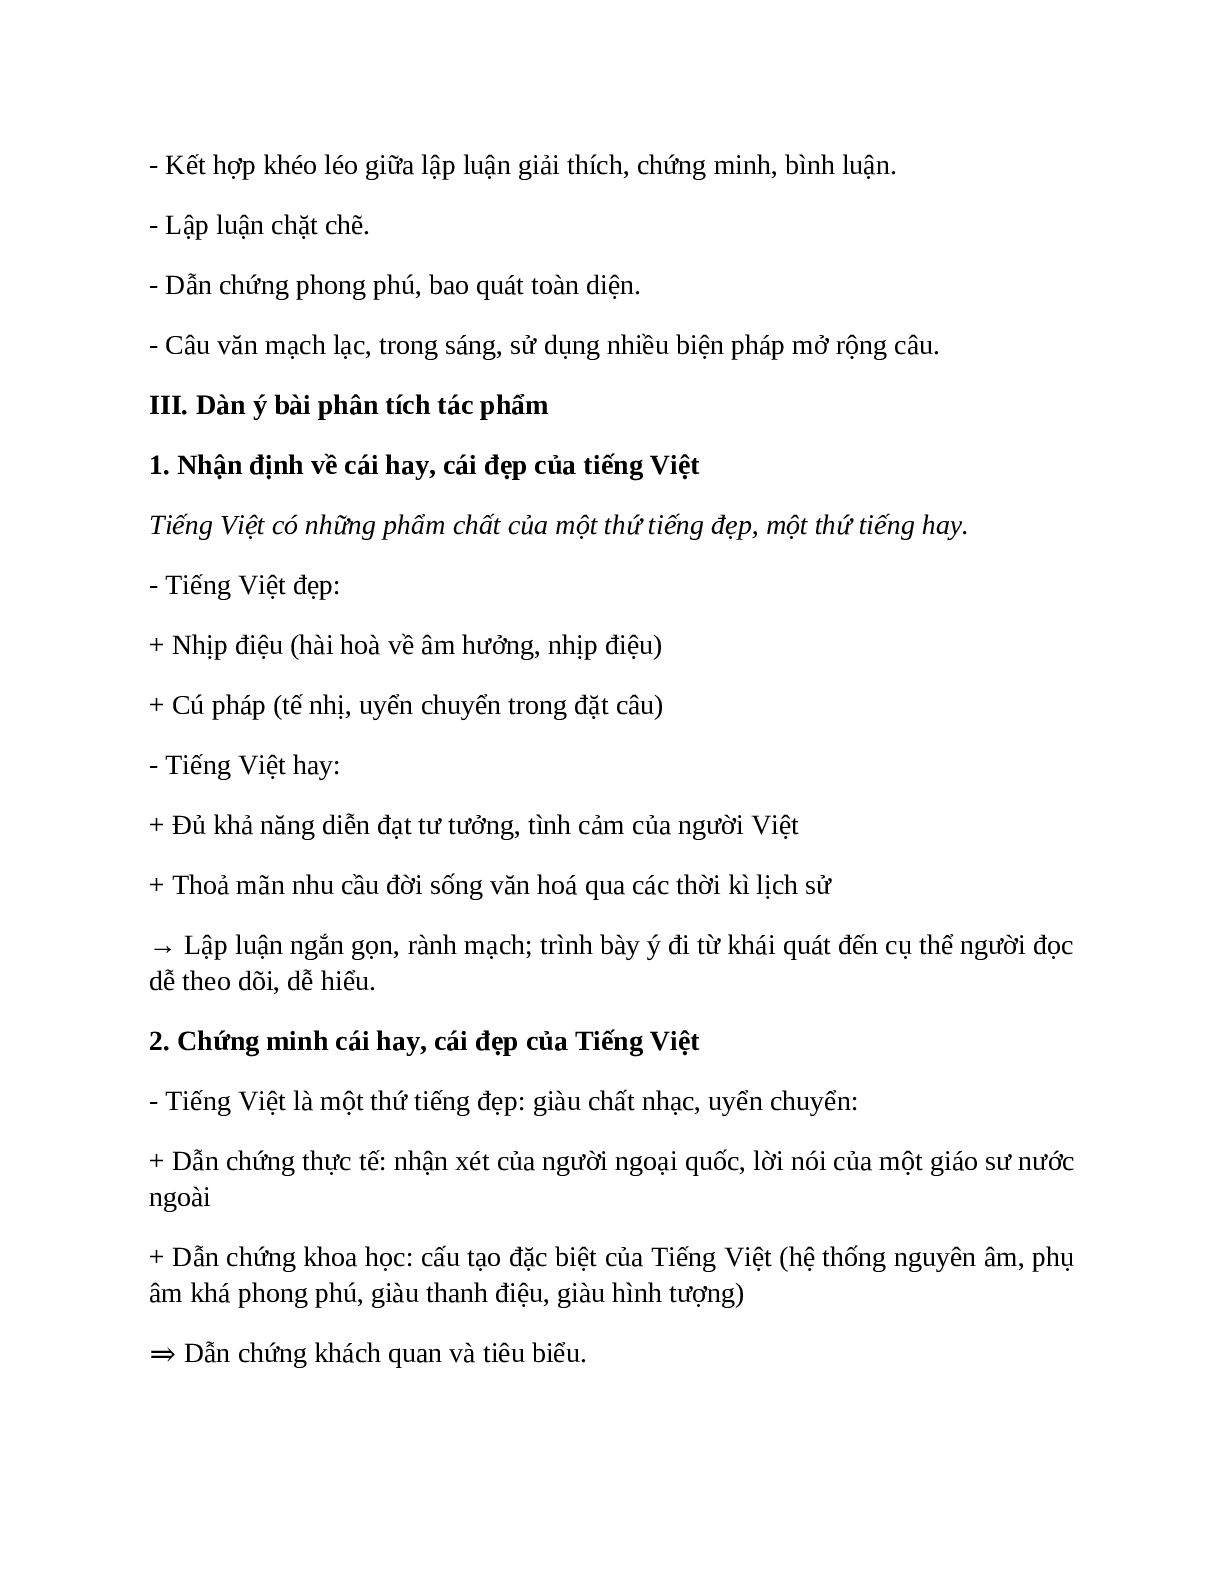 Sơ đồ tư duy bài Sự giàu đẹp của Tiếng Việt dễ nhớ, ngắn nhất - Ngữ văn lớp 7 (trang 3)